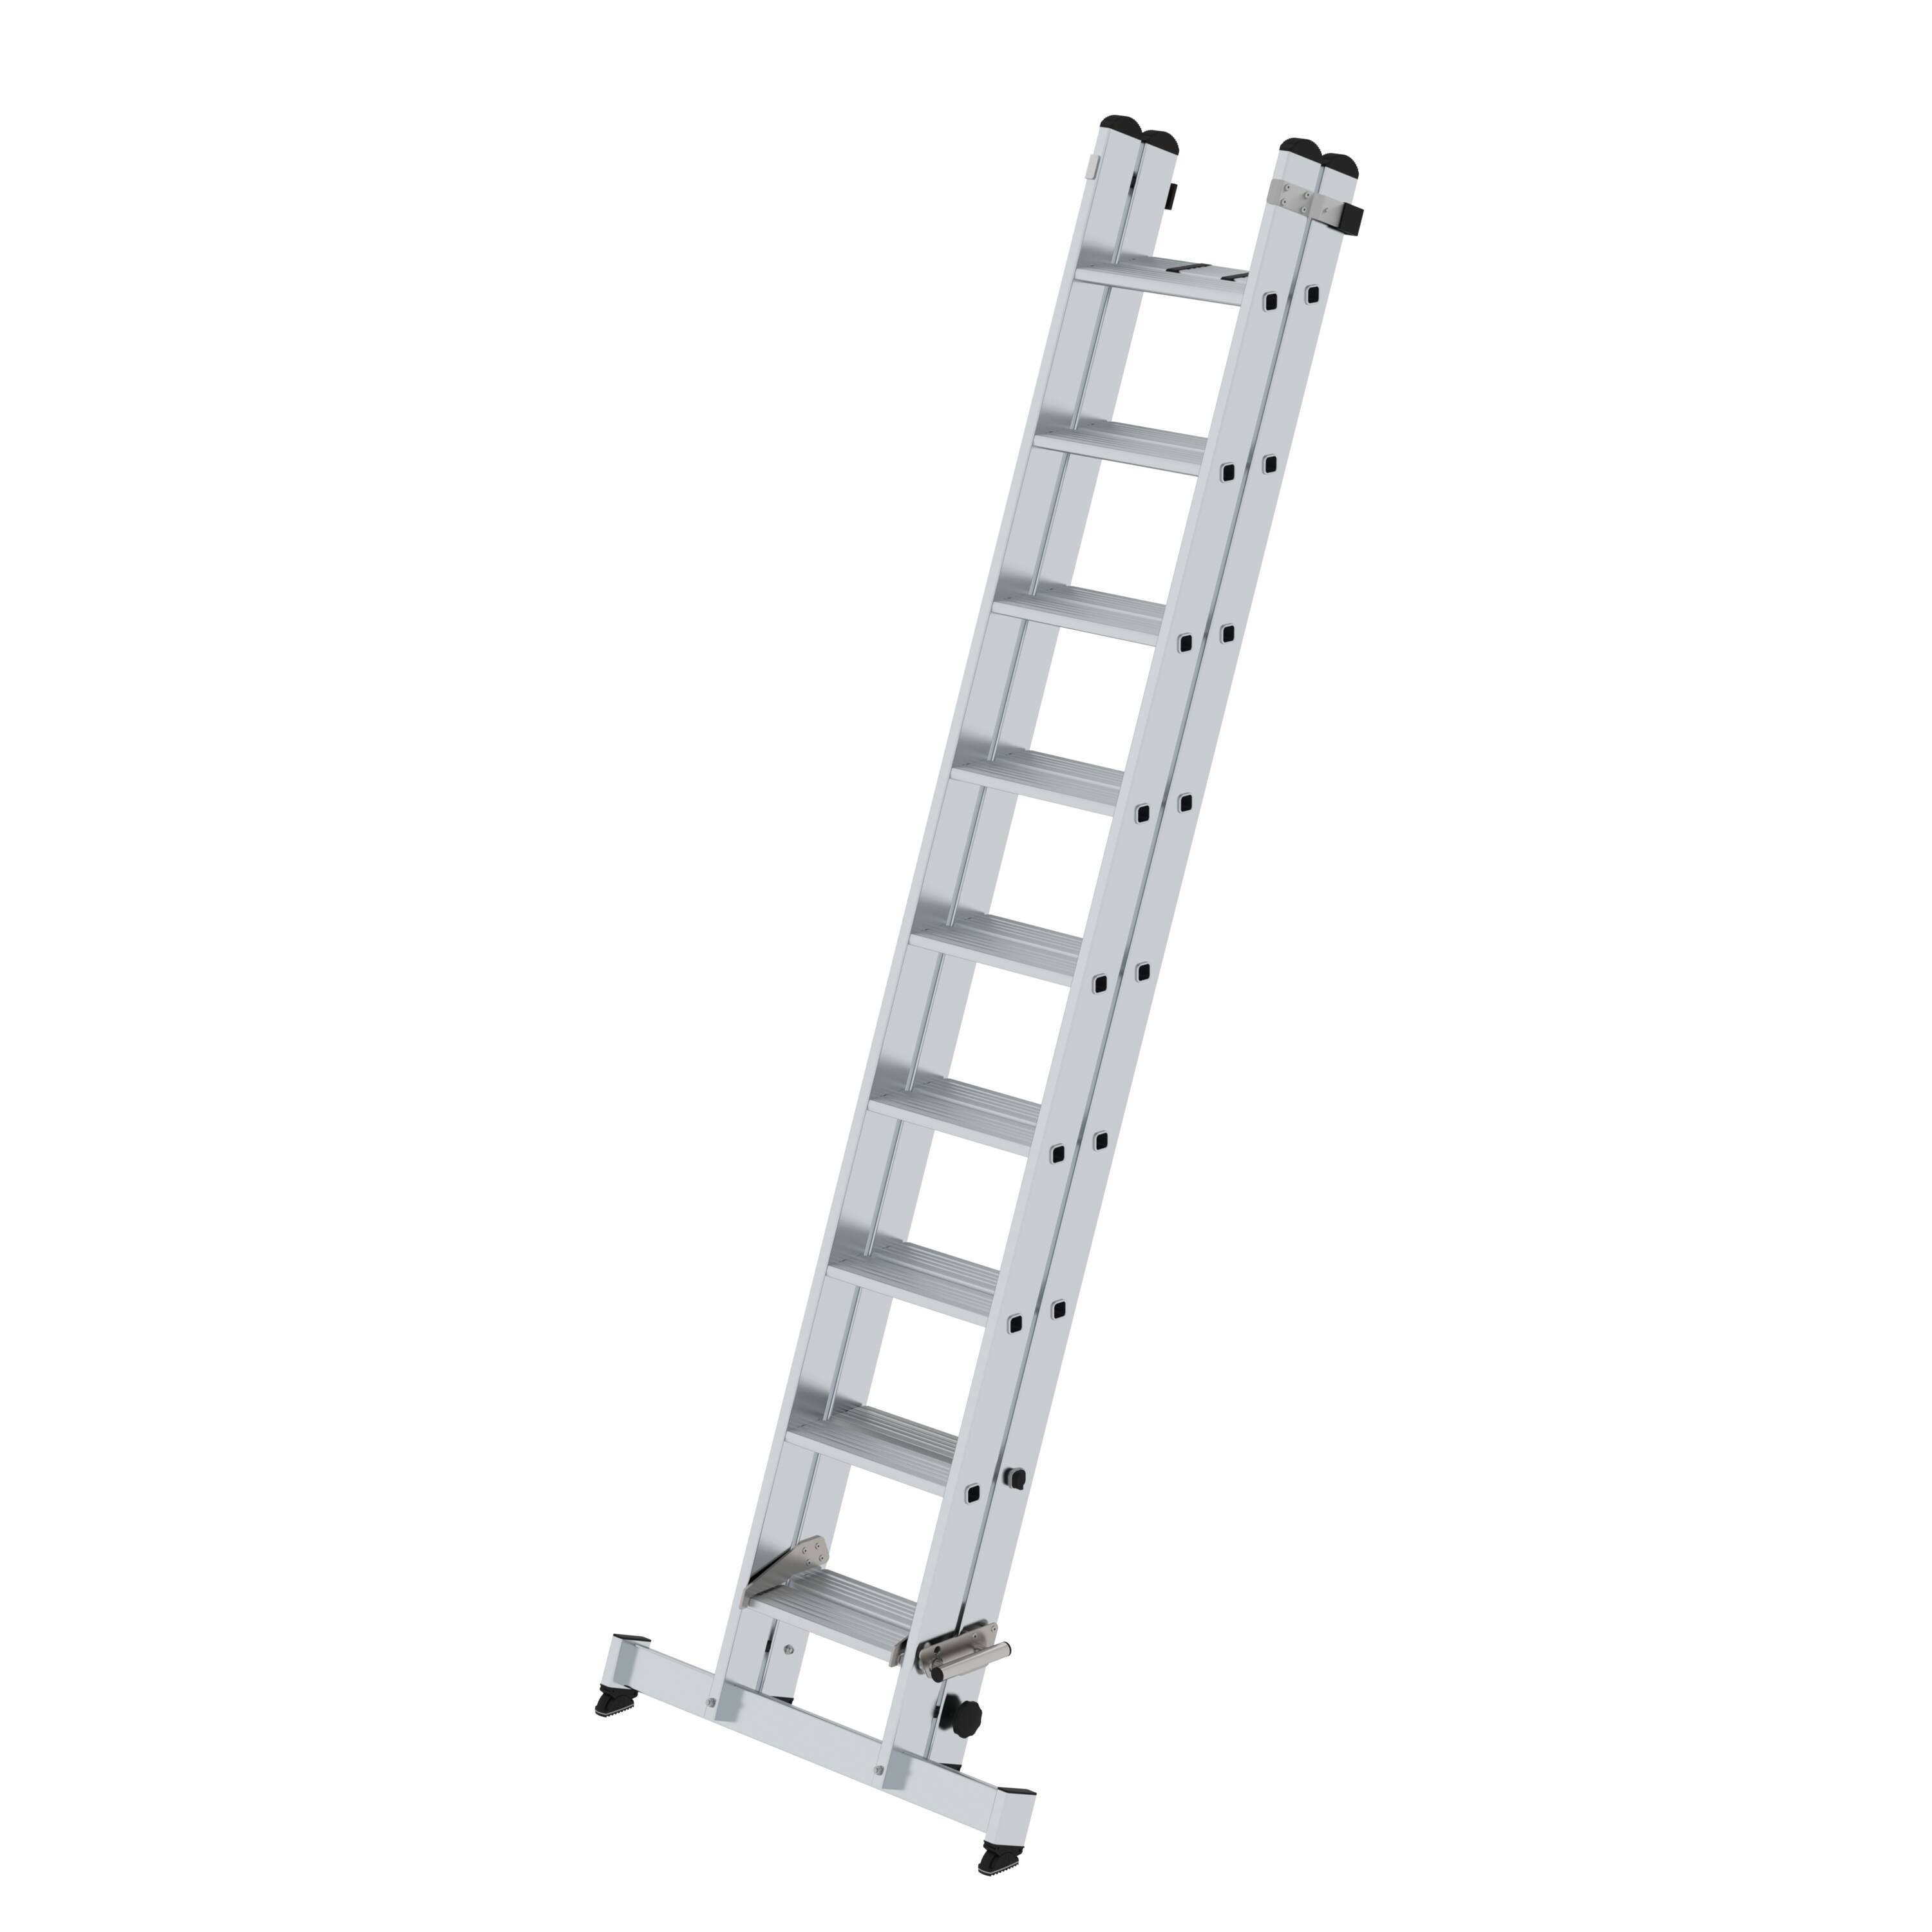 MUNK Stufen-Schiebeleiter 2-teilig mit nivello®-Traverse  